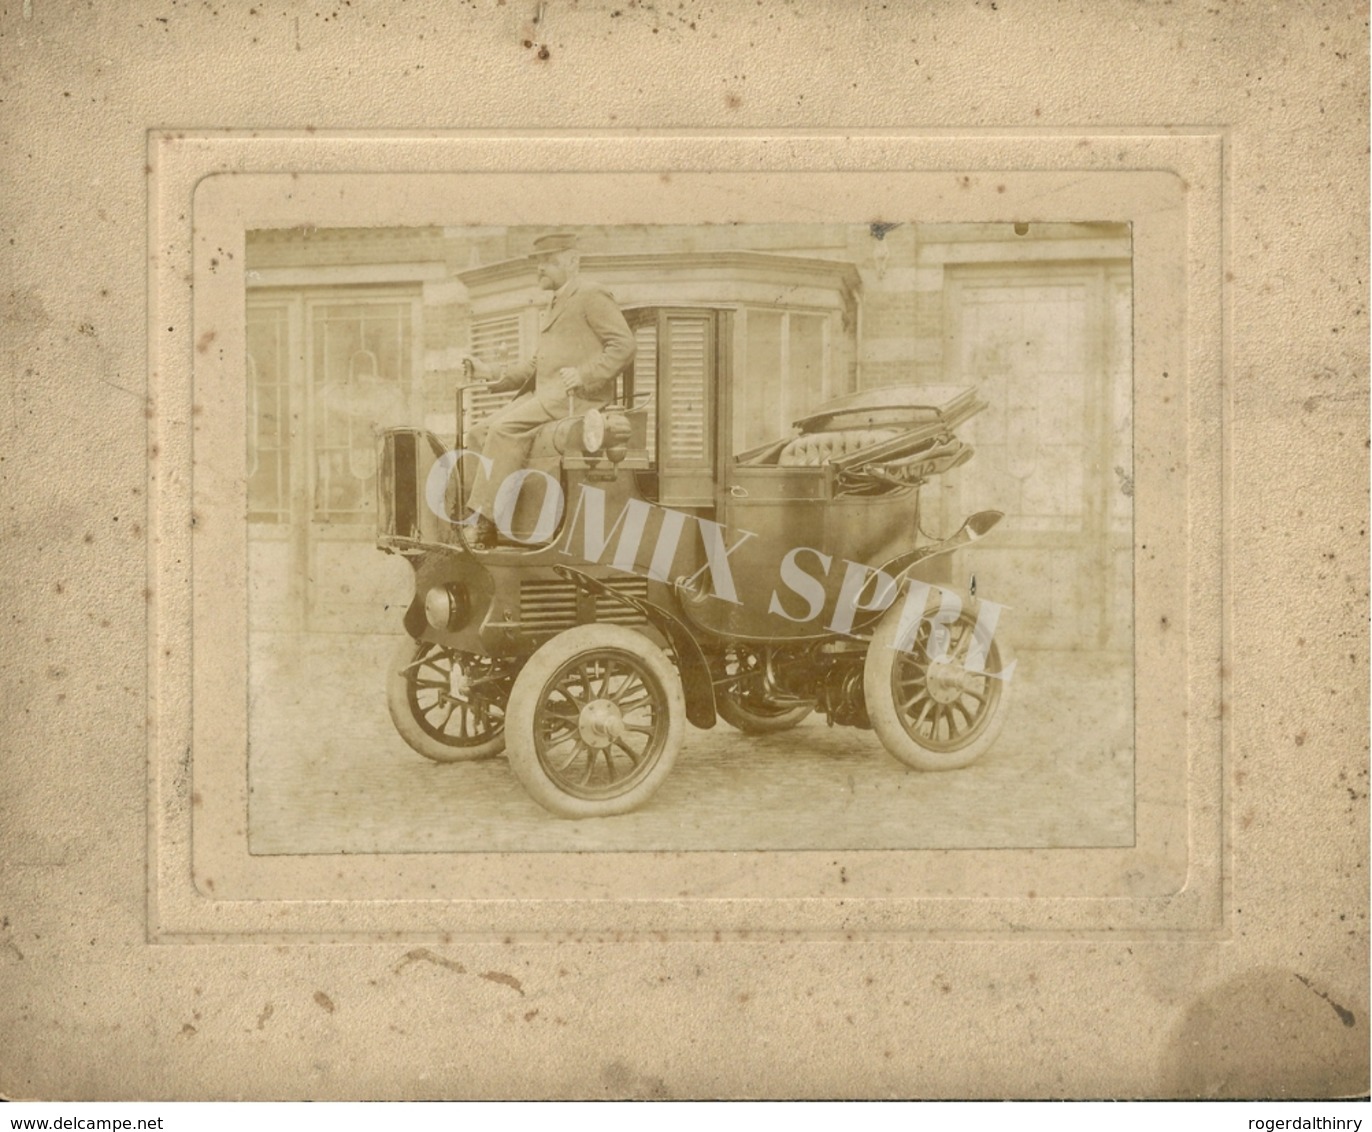 AUTOMOBILES ELECTRIQUES J. LEFERT RUE DU POIVRE 17 GAND 1898/1902 UTILISANT DES BATTERIES TUDOR - Automobiles